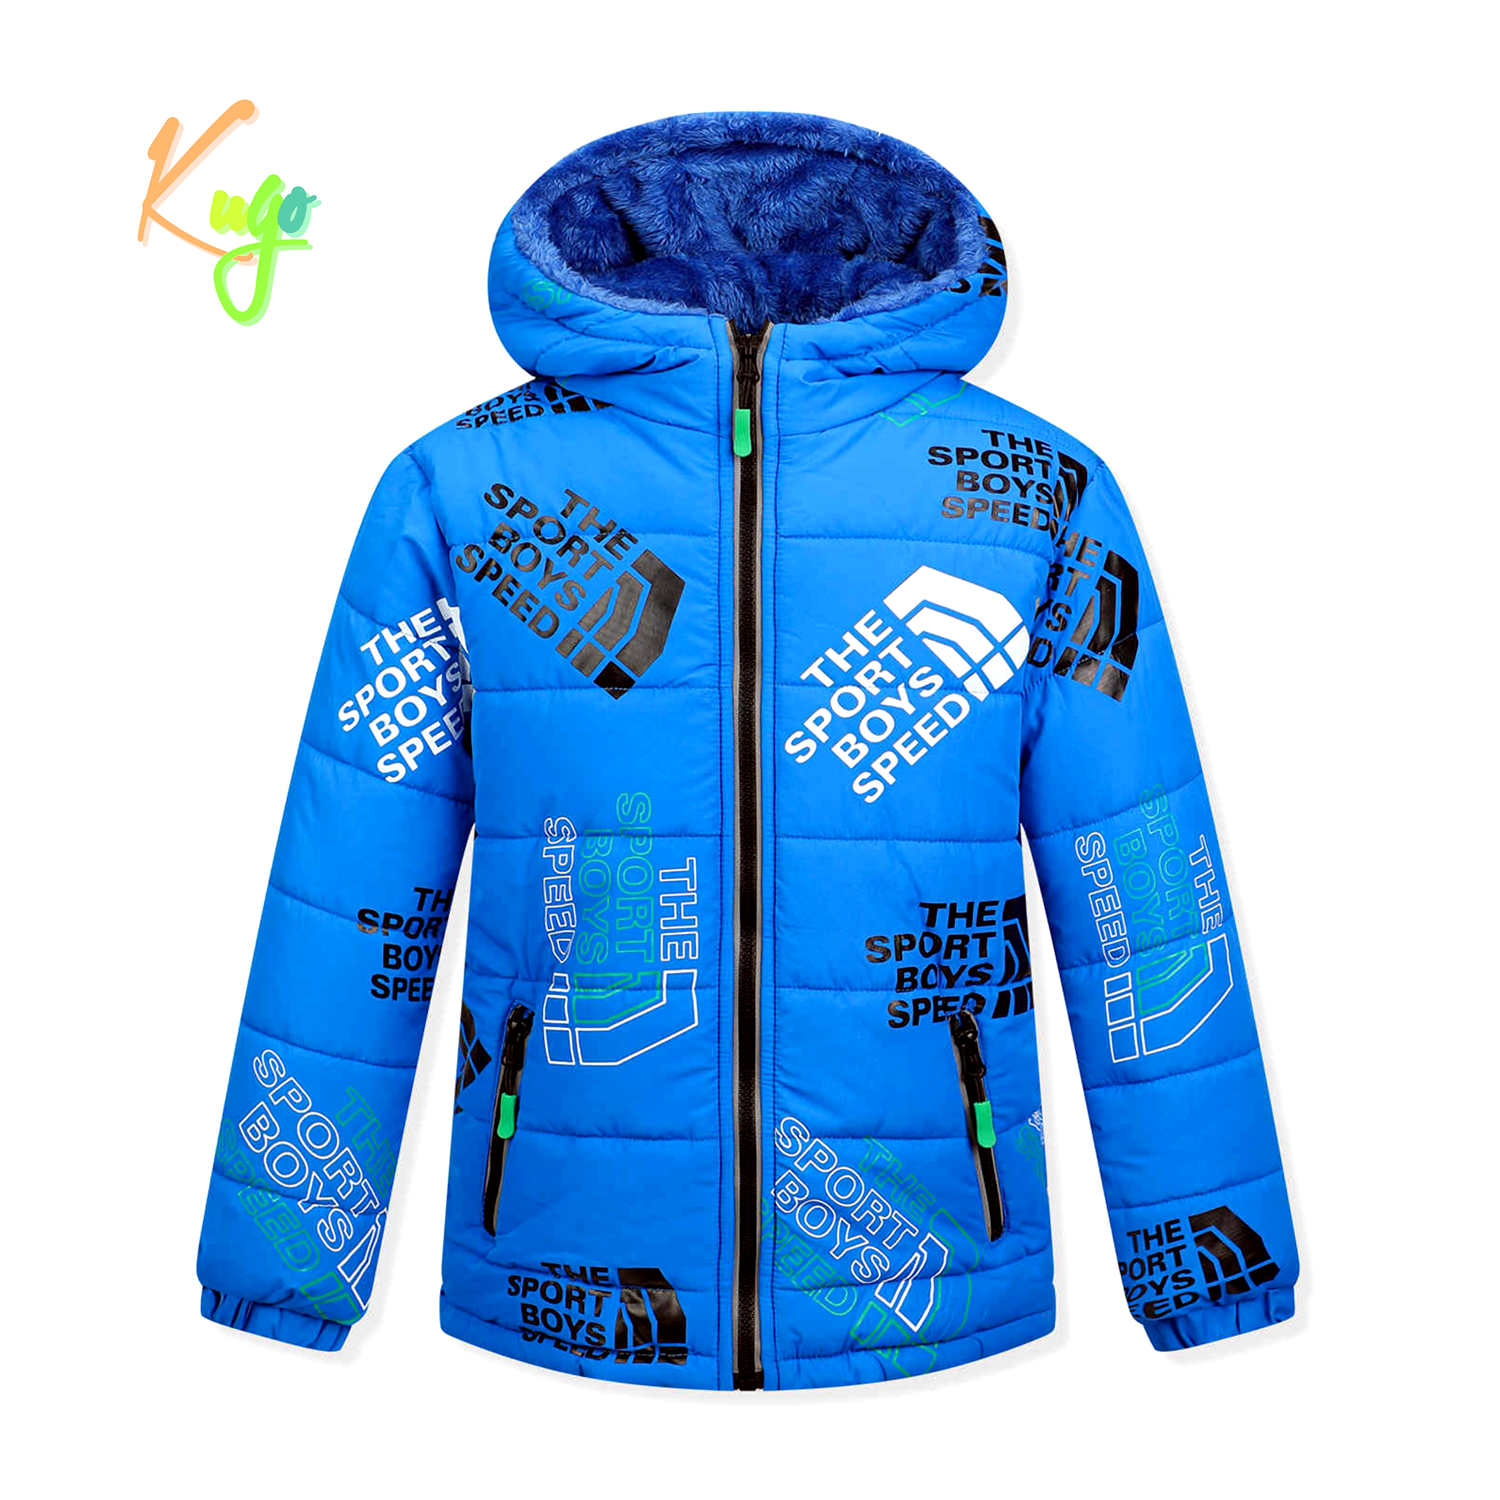 Chlapecká zimní bunda - KUGO FB0325, světle modrá Barva: Modrá světle, Velikost: 146